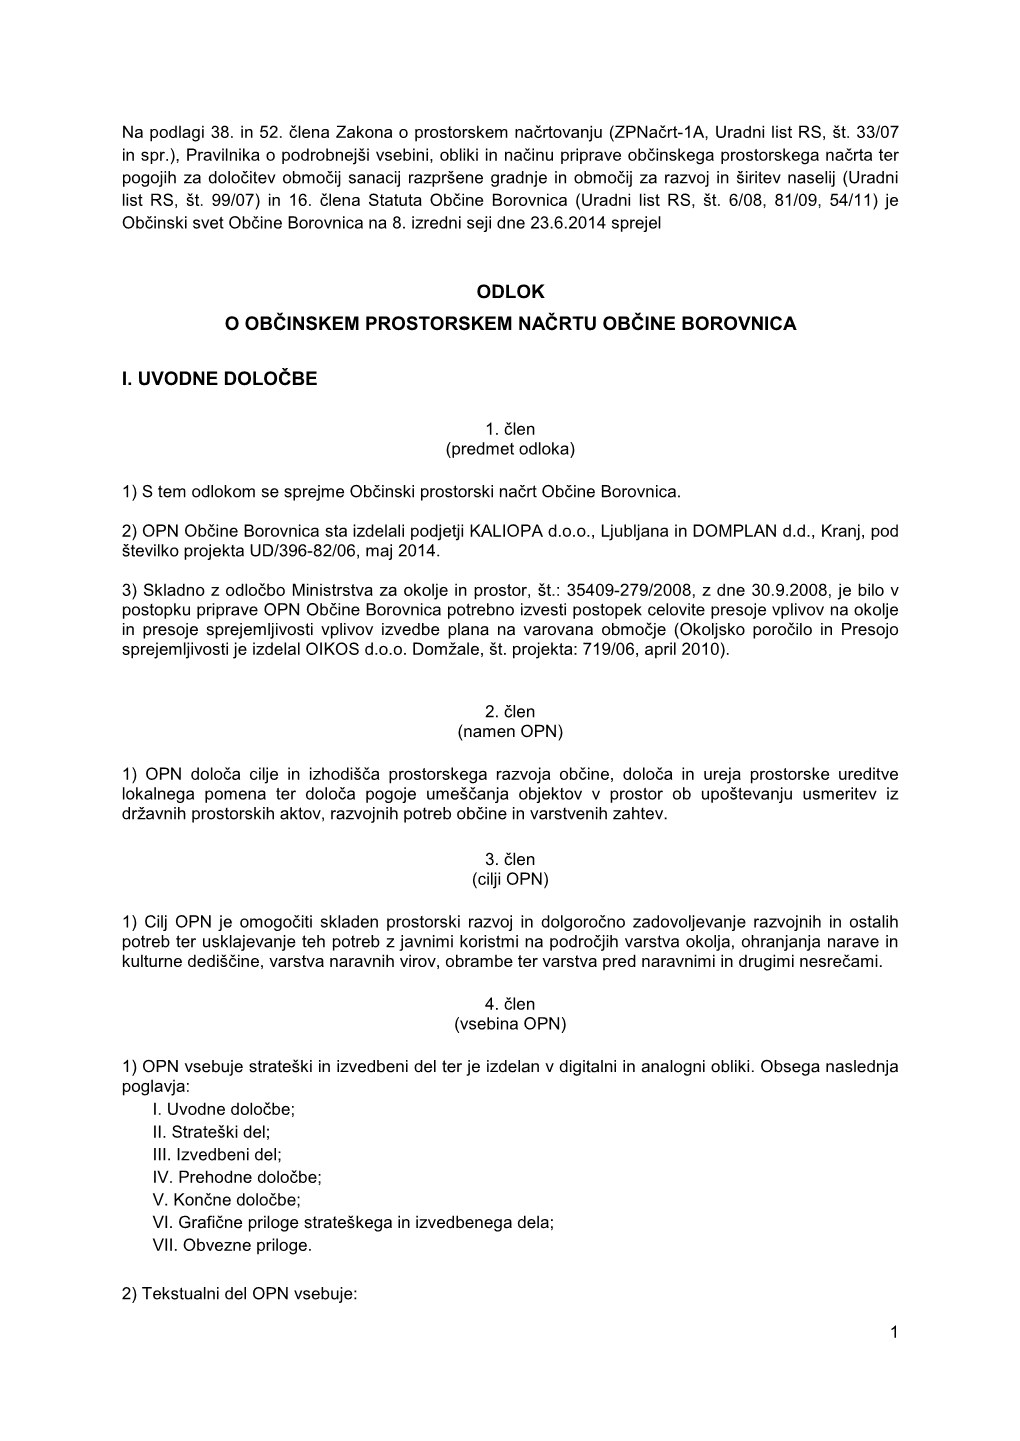 OPN Občine Borovnica Sta Izdelali Podjetji KALIOPA D.O.O., Ljubljana in DOMPLAN D.D., Kranj, Pod Številko Projekta UD/396-82/06, Maj 2014